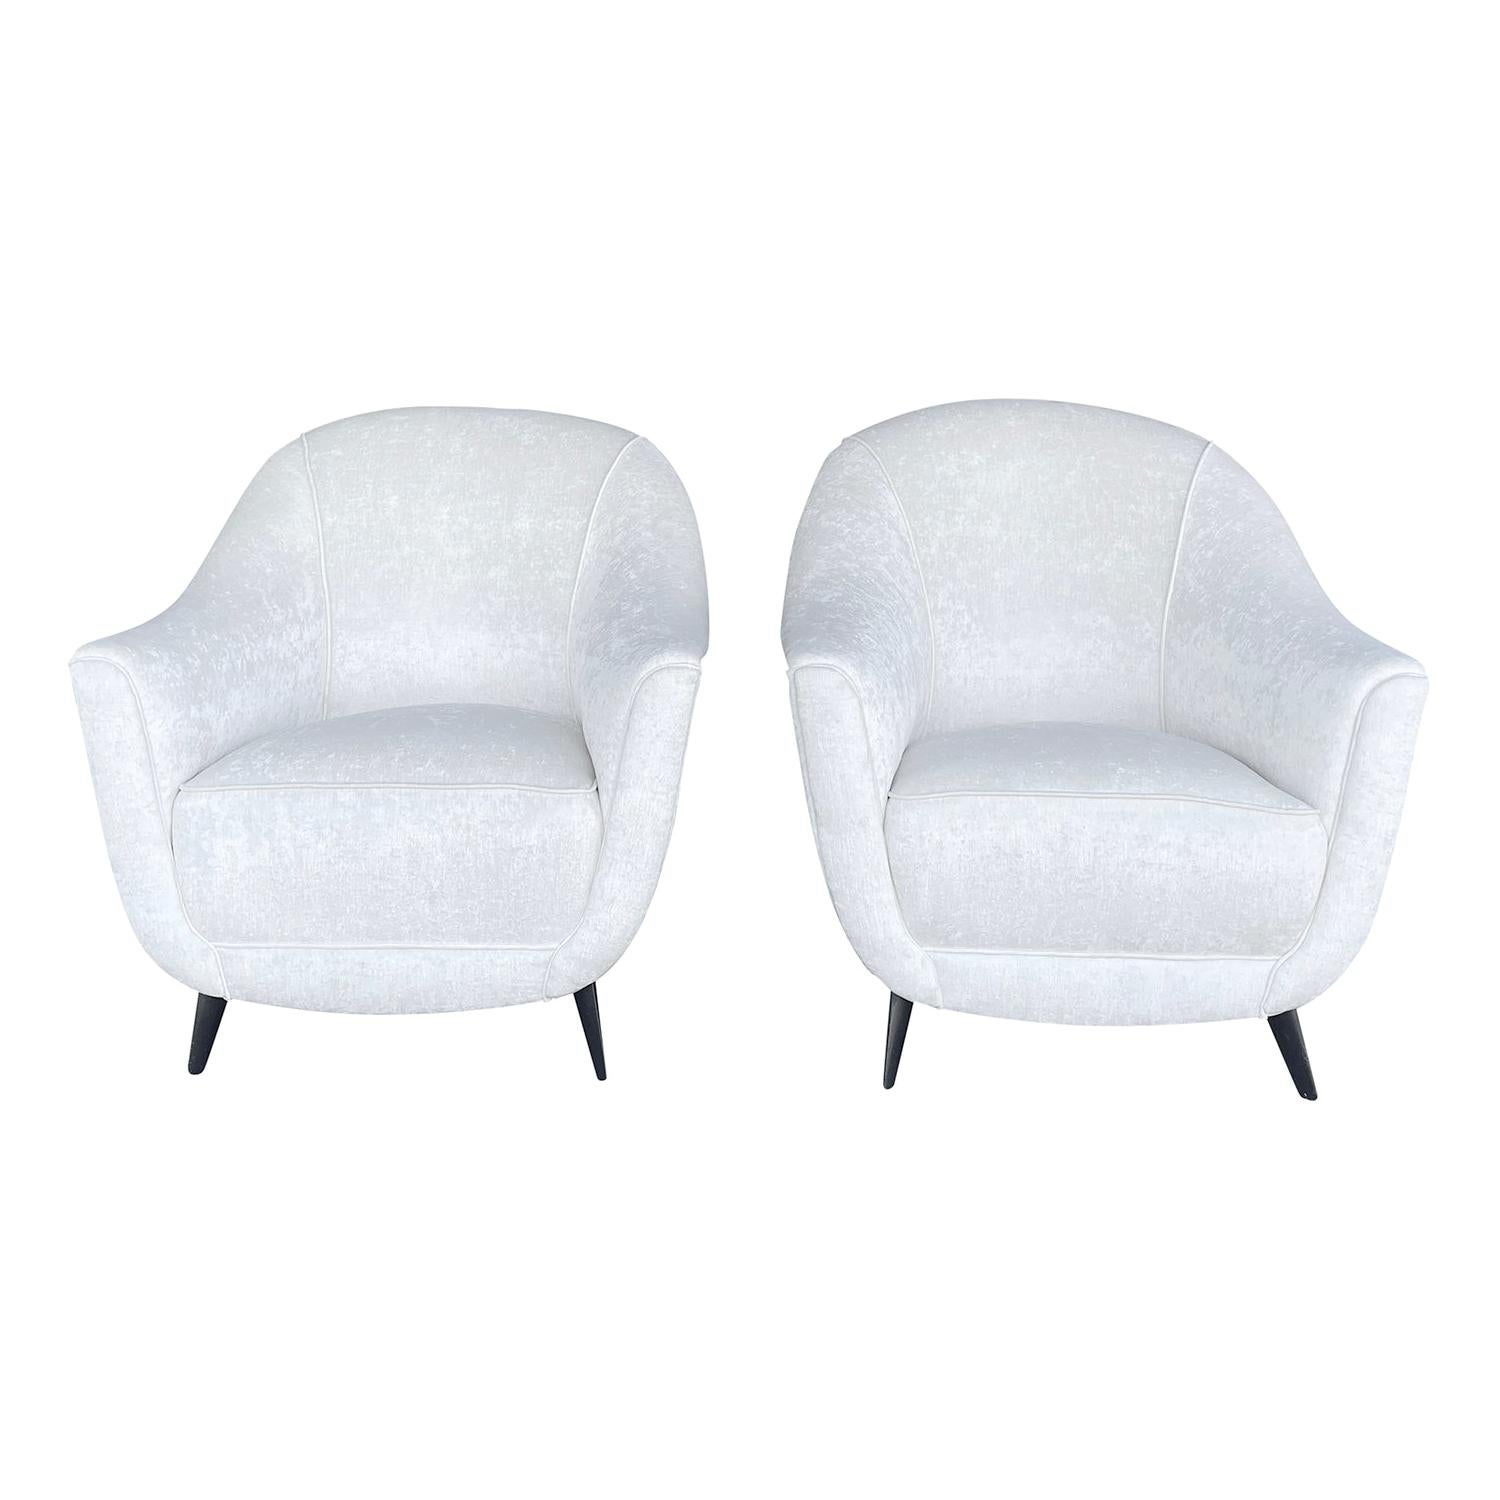 20th Century White Italian Pair of Beechwood Club, Corner Chairs by Marco Zanuso